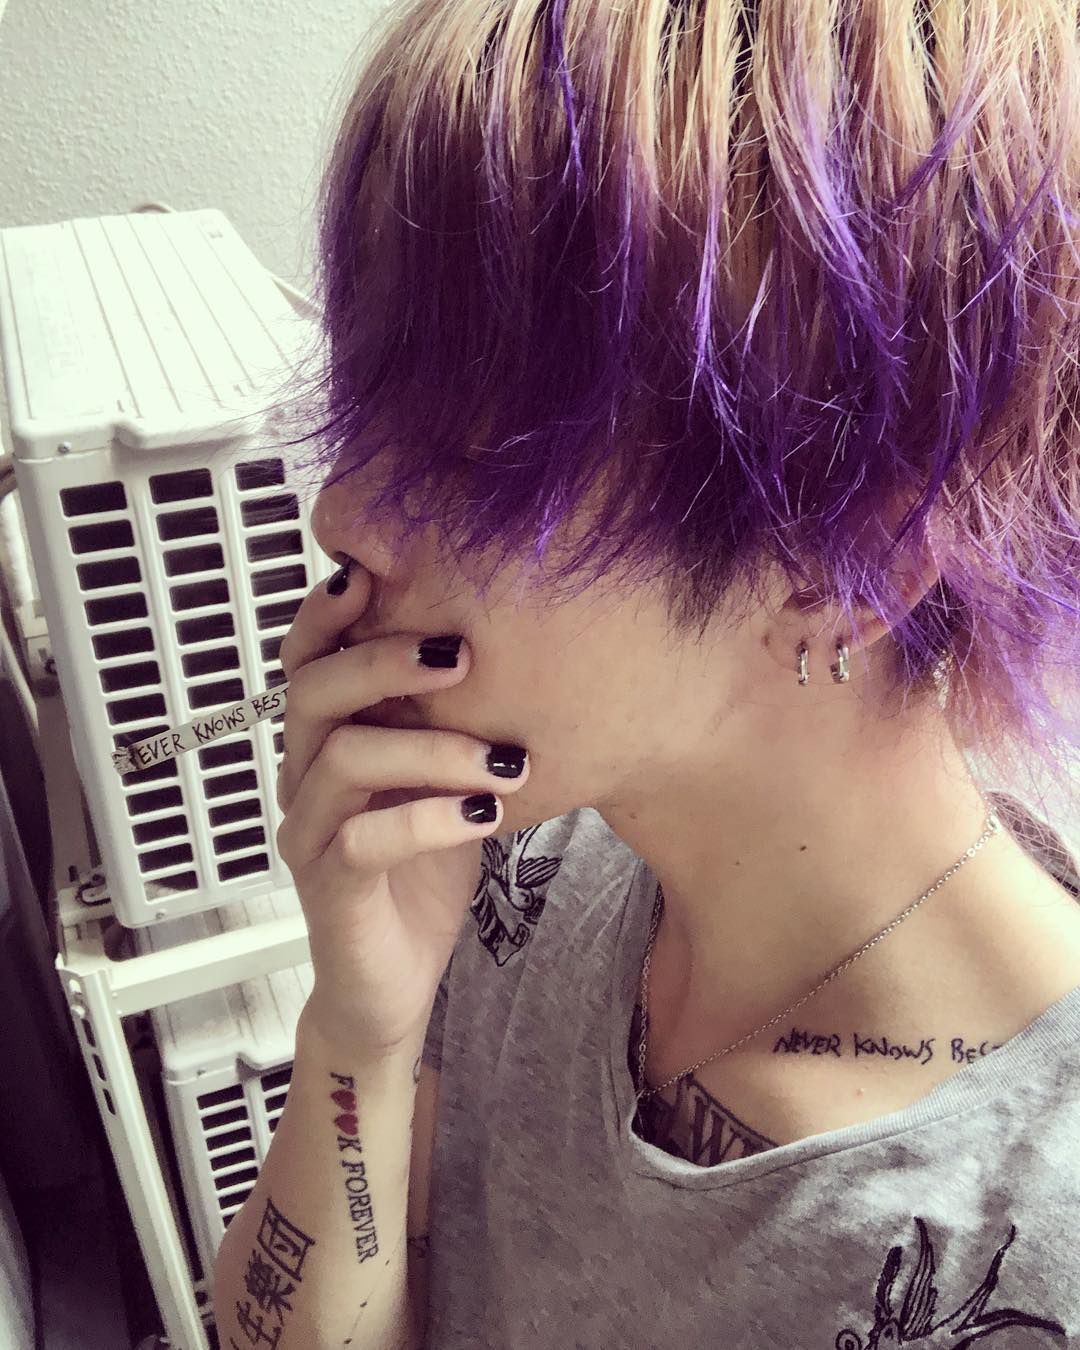 メンズ 髪型 紫